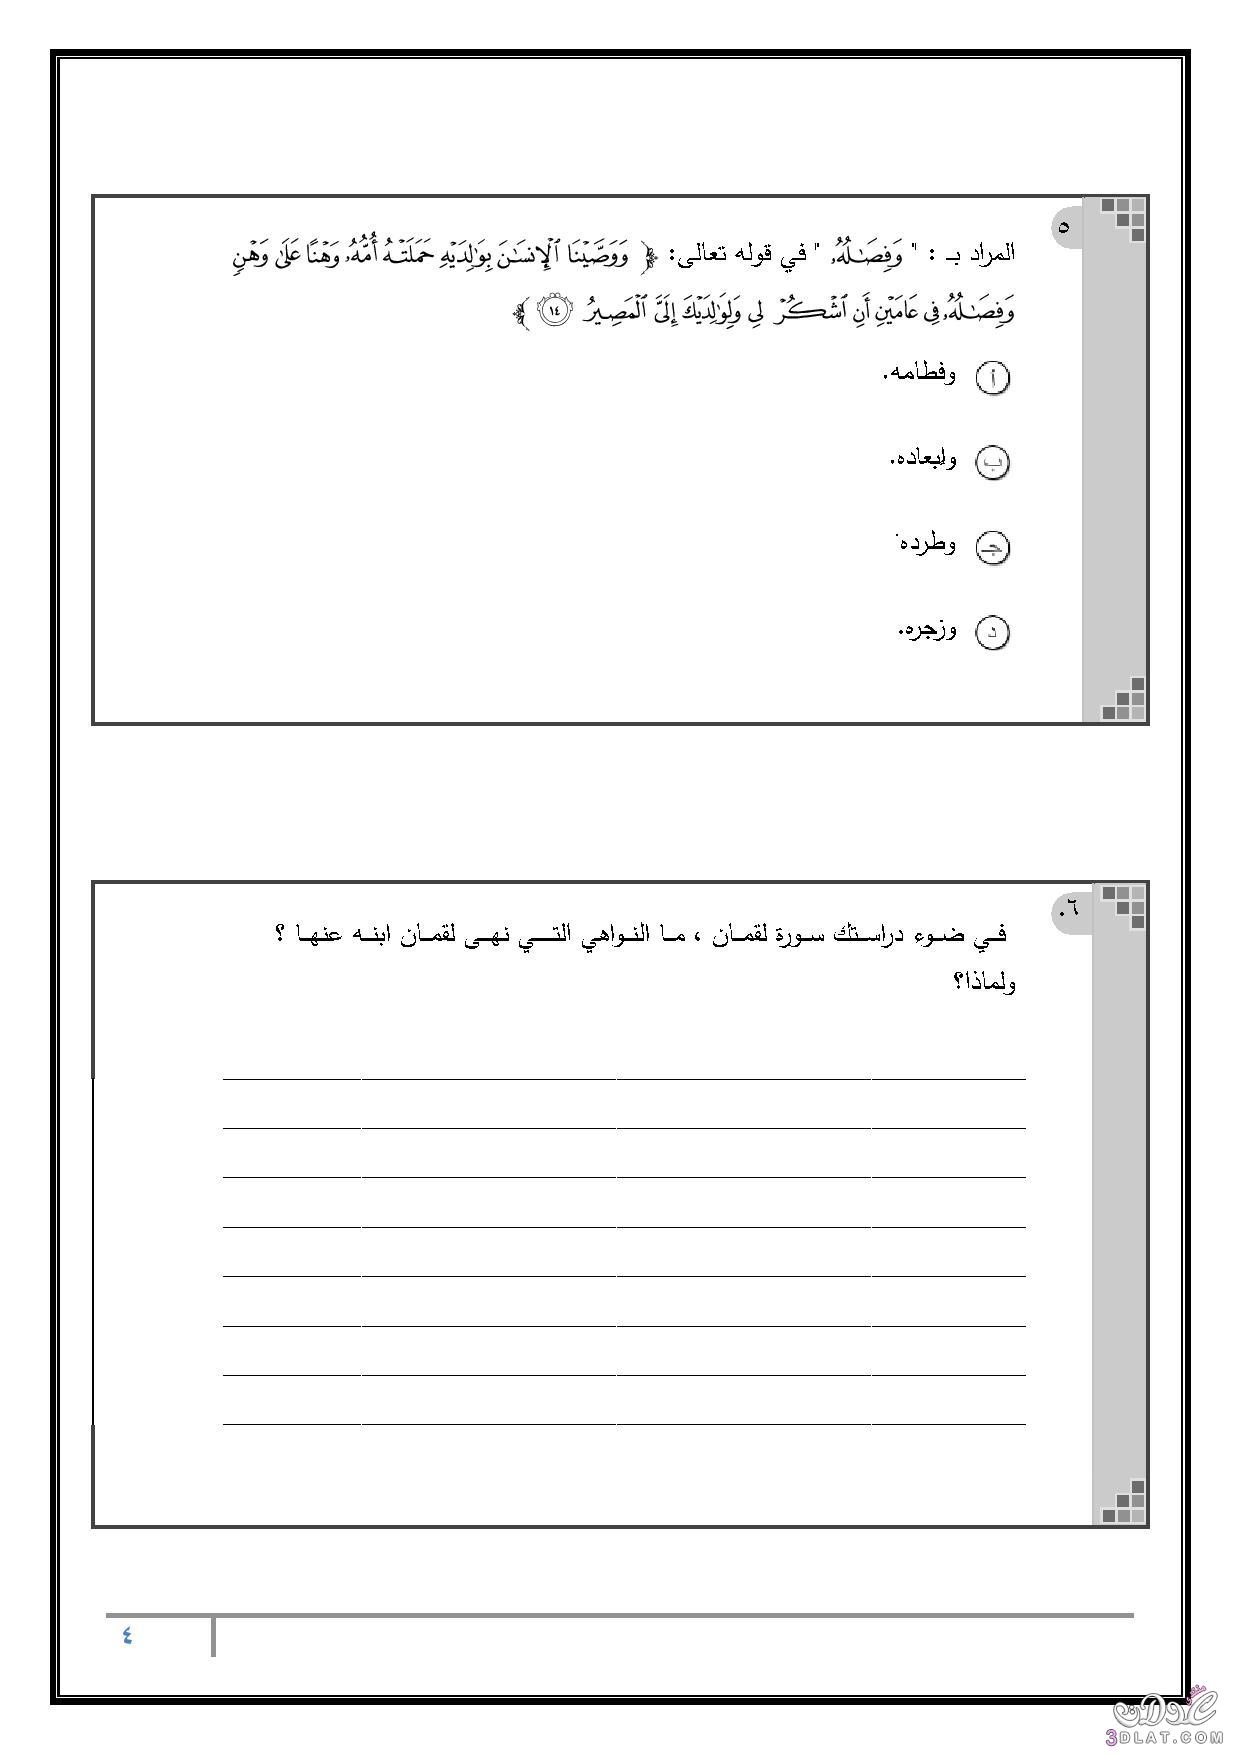 امتحان الوزارة في التربية الدينية الإسلامية للصف الثالث الثانوي بنظام البوكليت